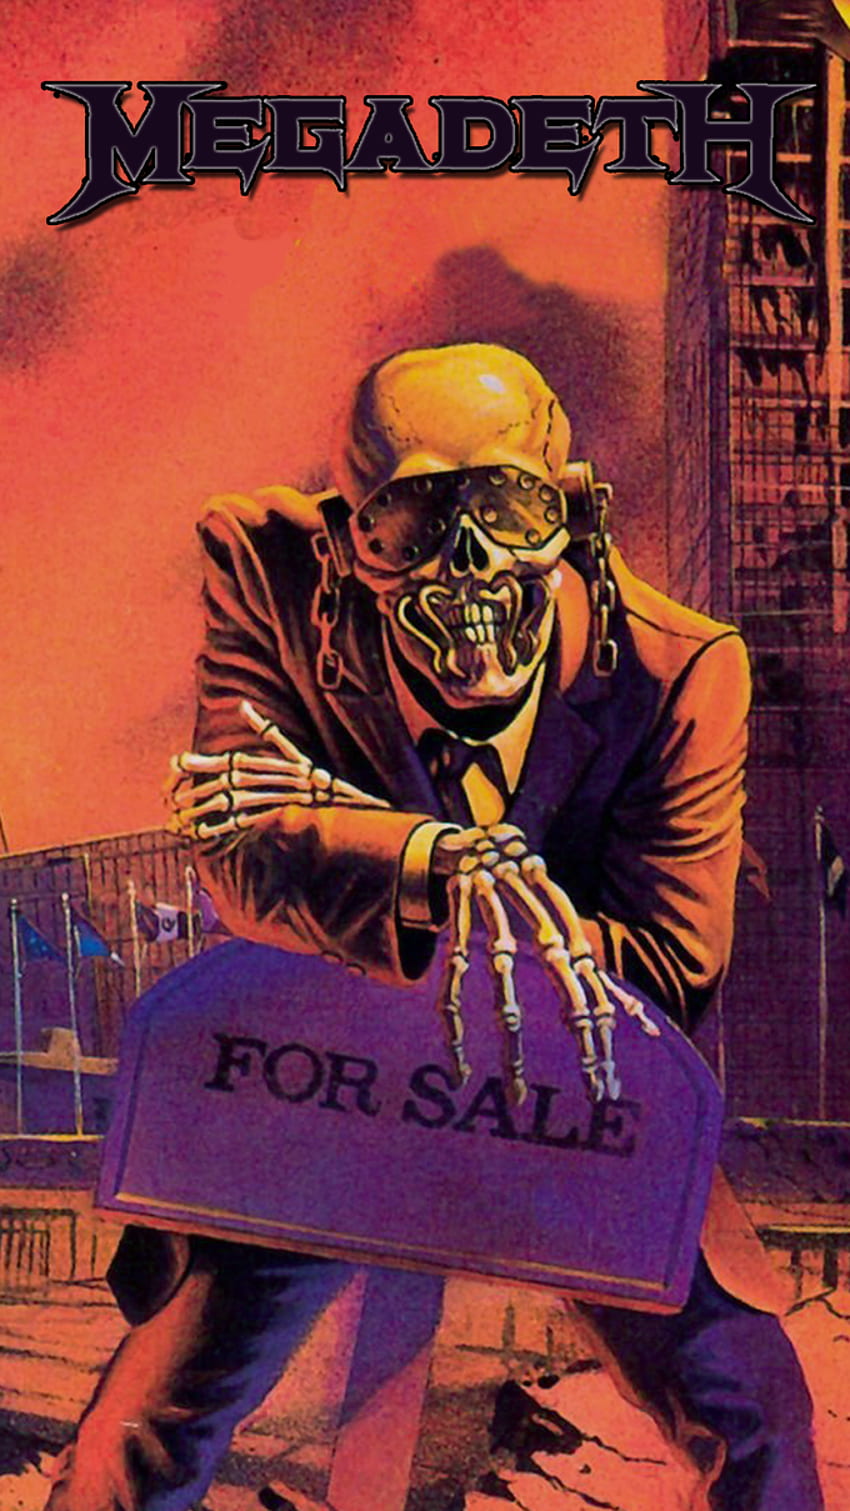 Telefono in metallo - Android []. Poster di band rock, musica heavy metal, band di musica metal, logo Megadeth Sfondo del telefono HD